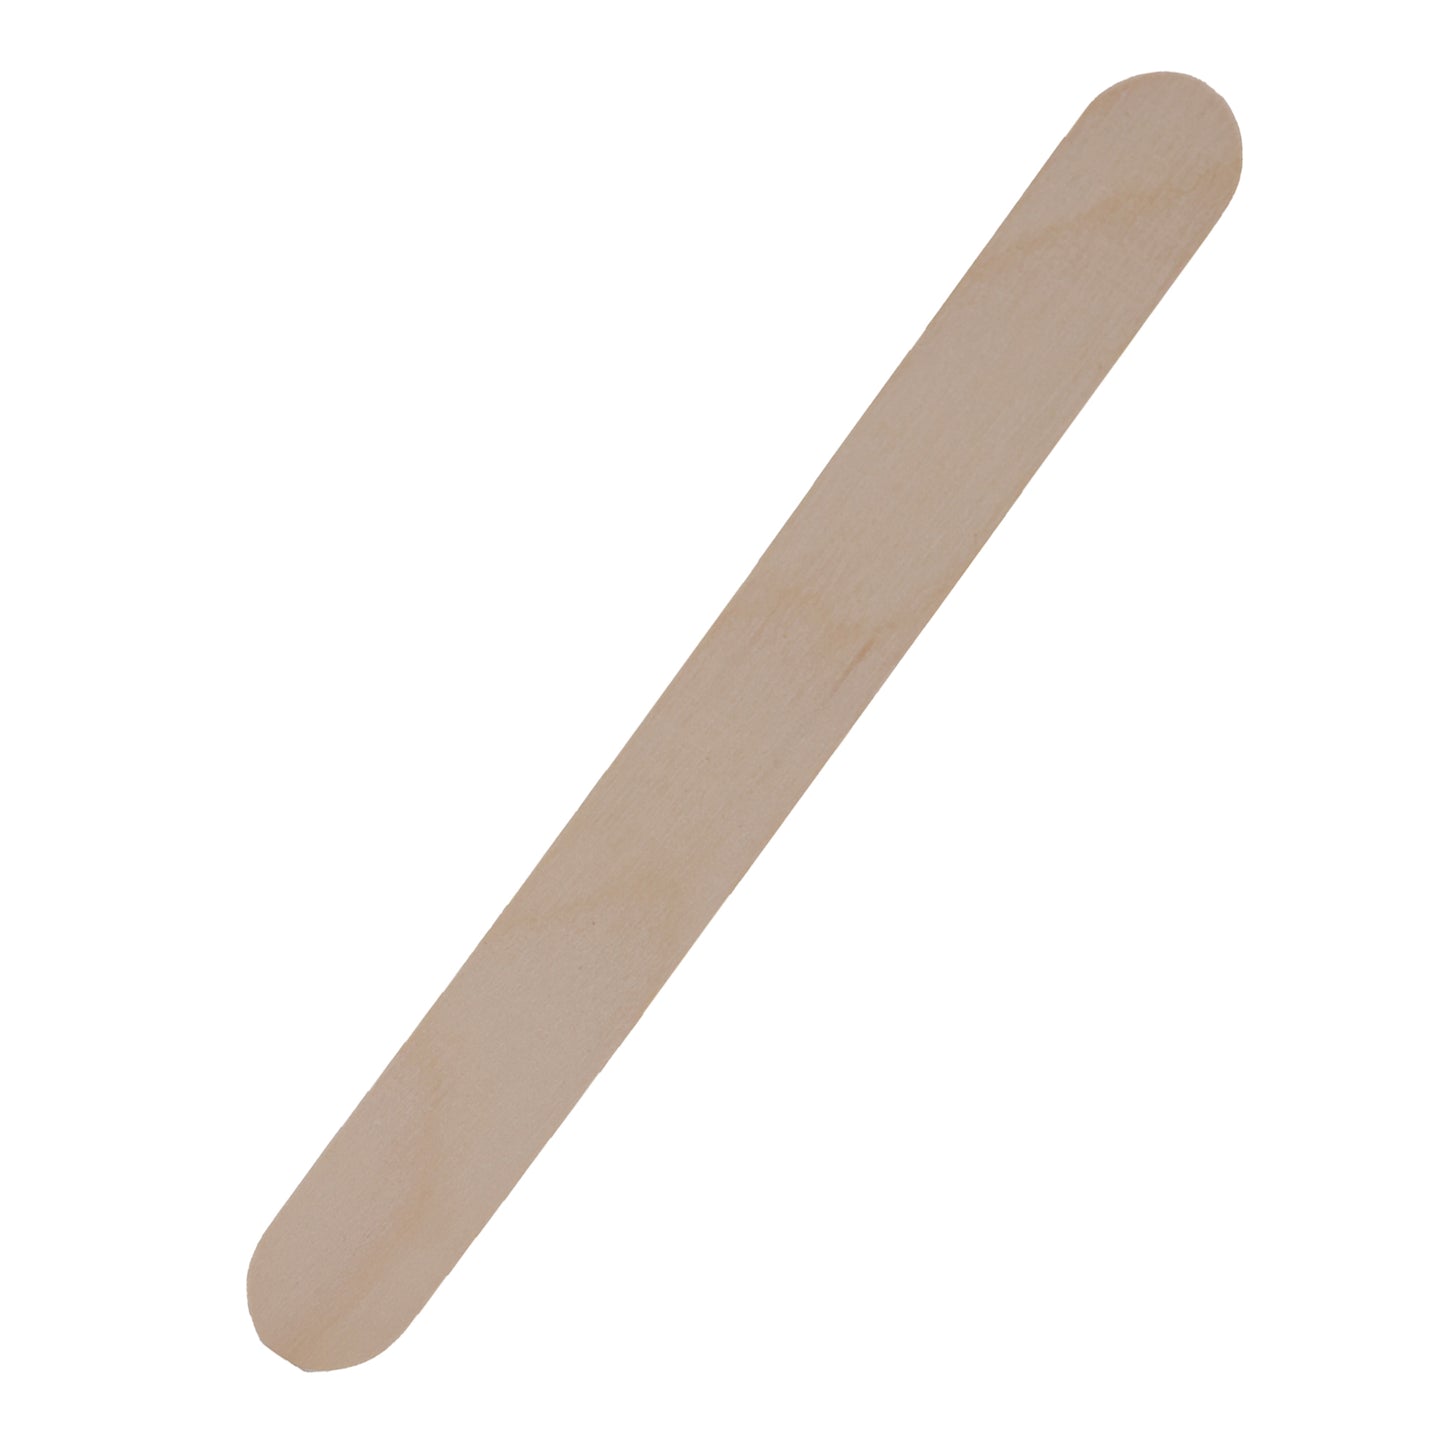 Small Wooden Stir Stick detail